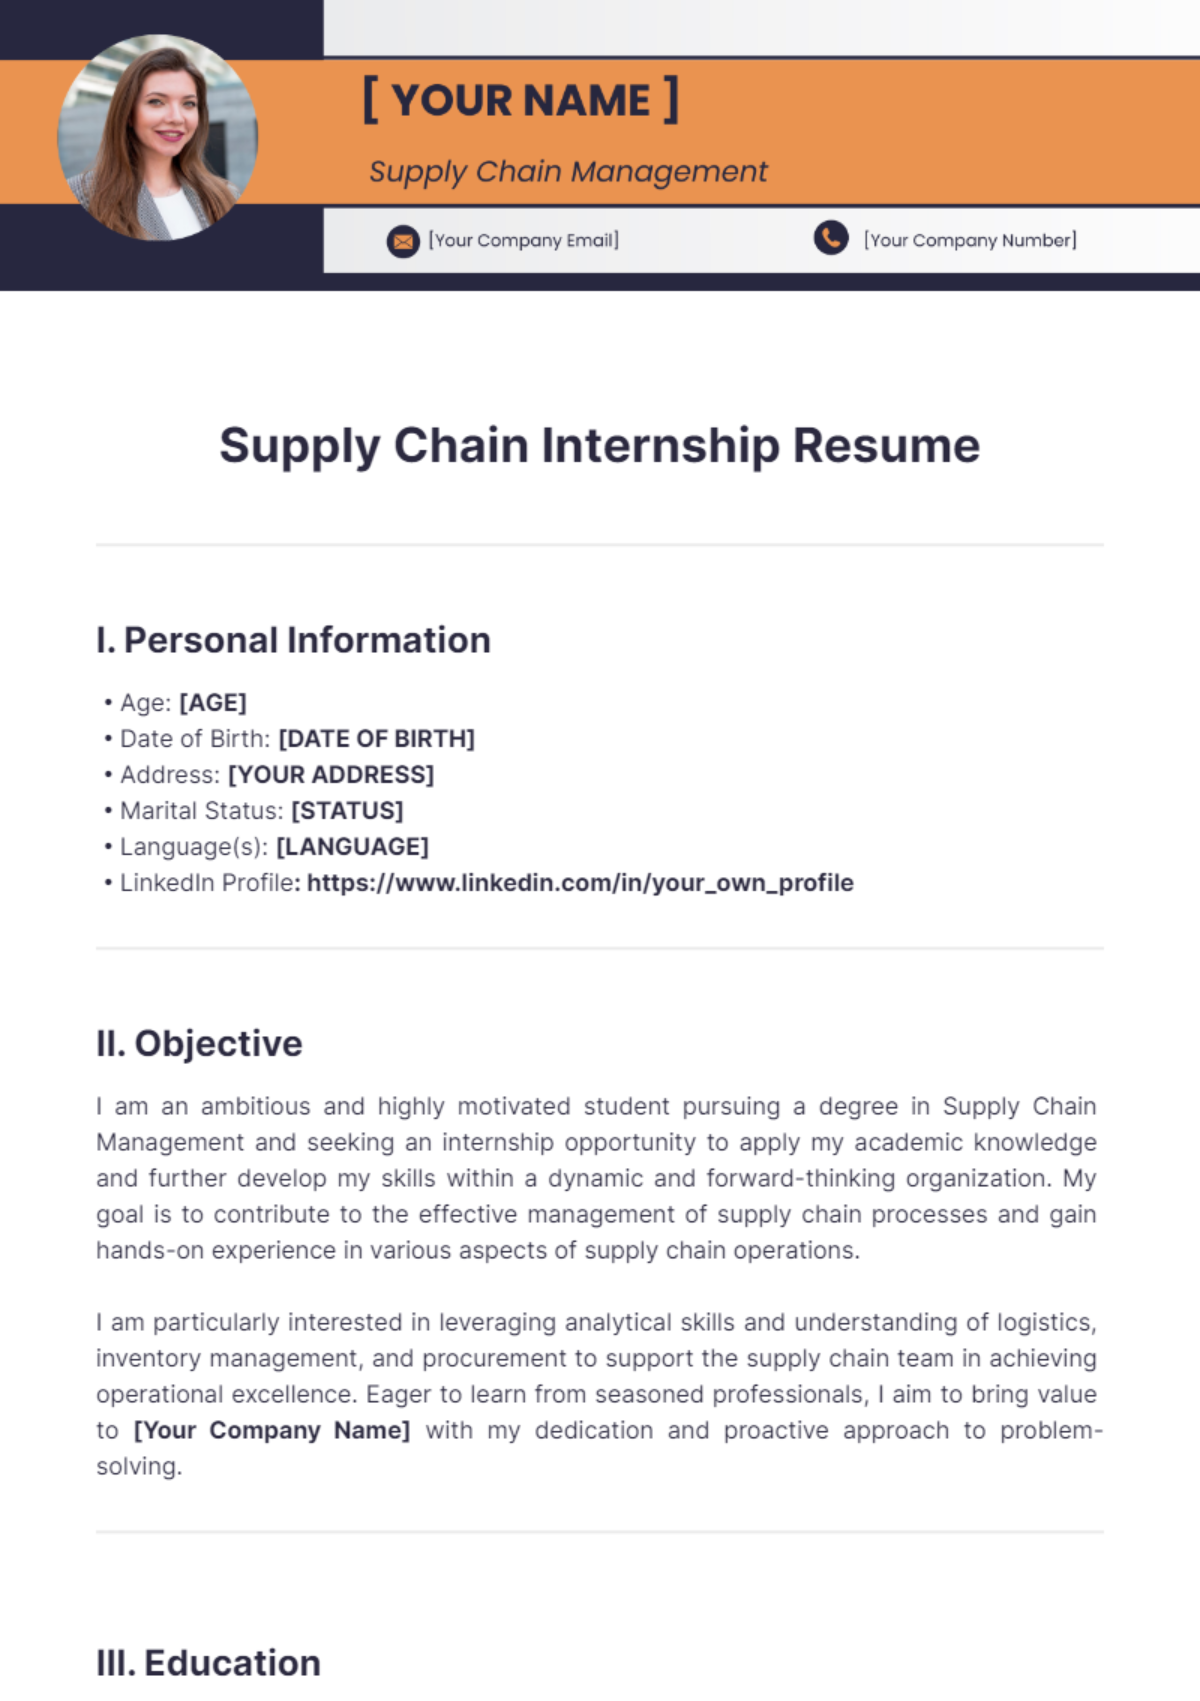 Supply Chain Internship Resume